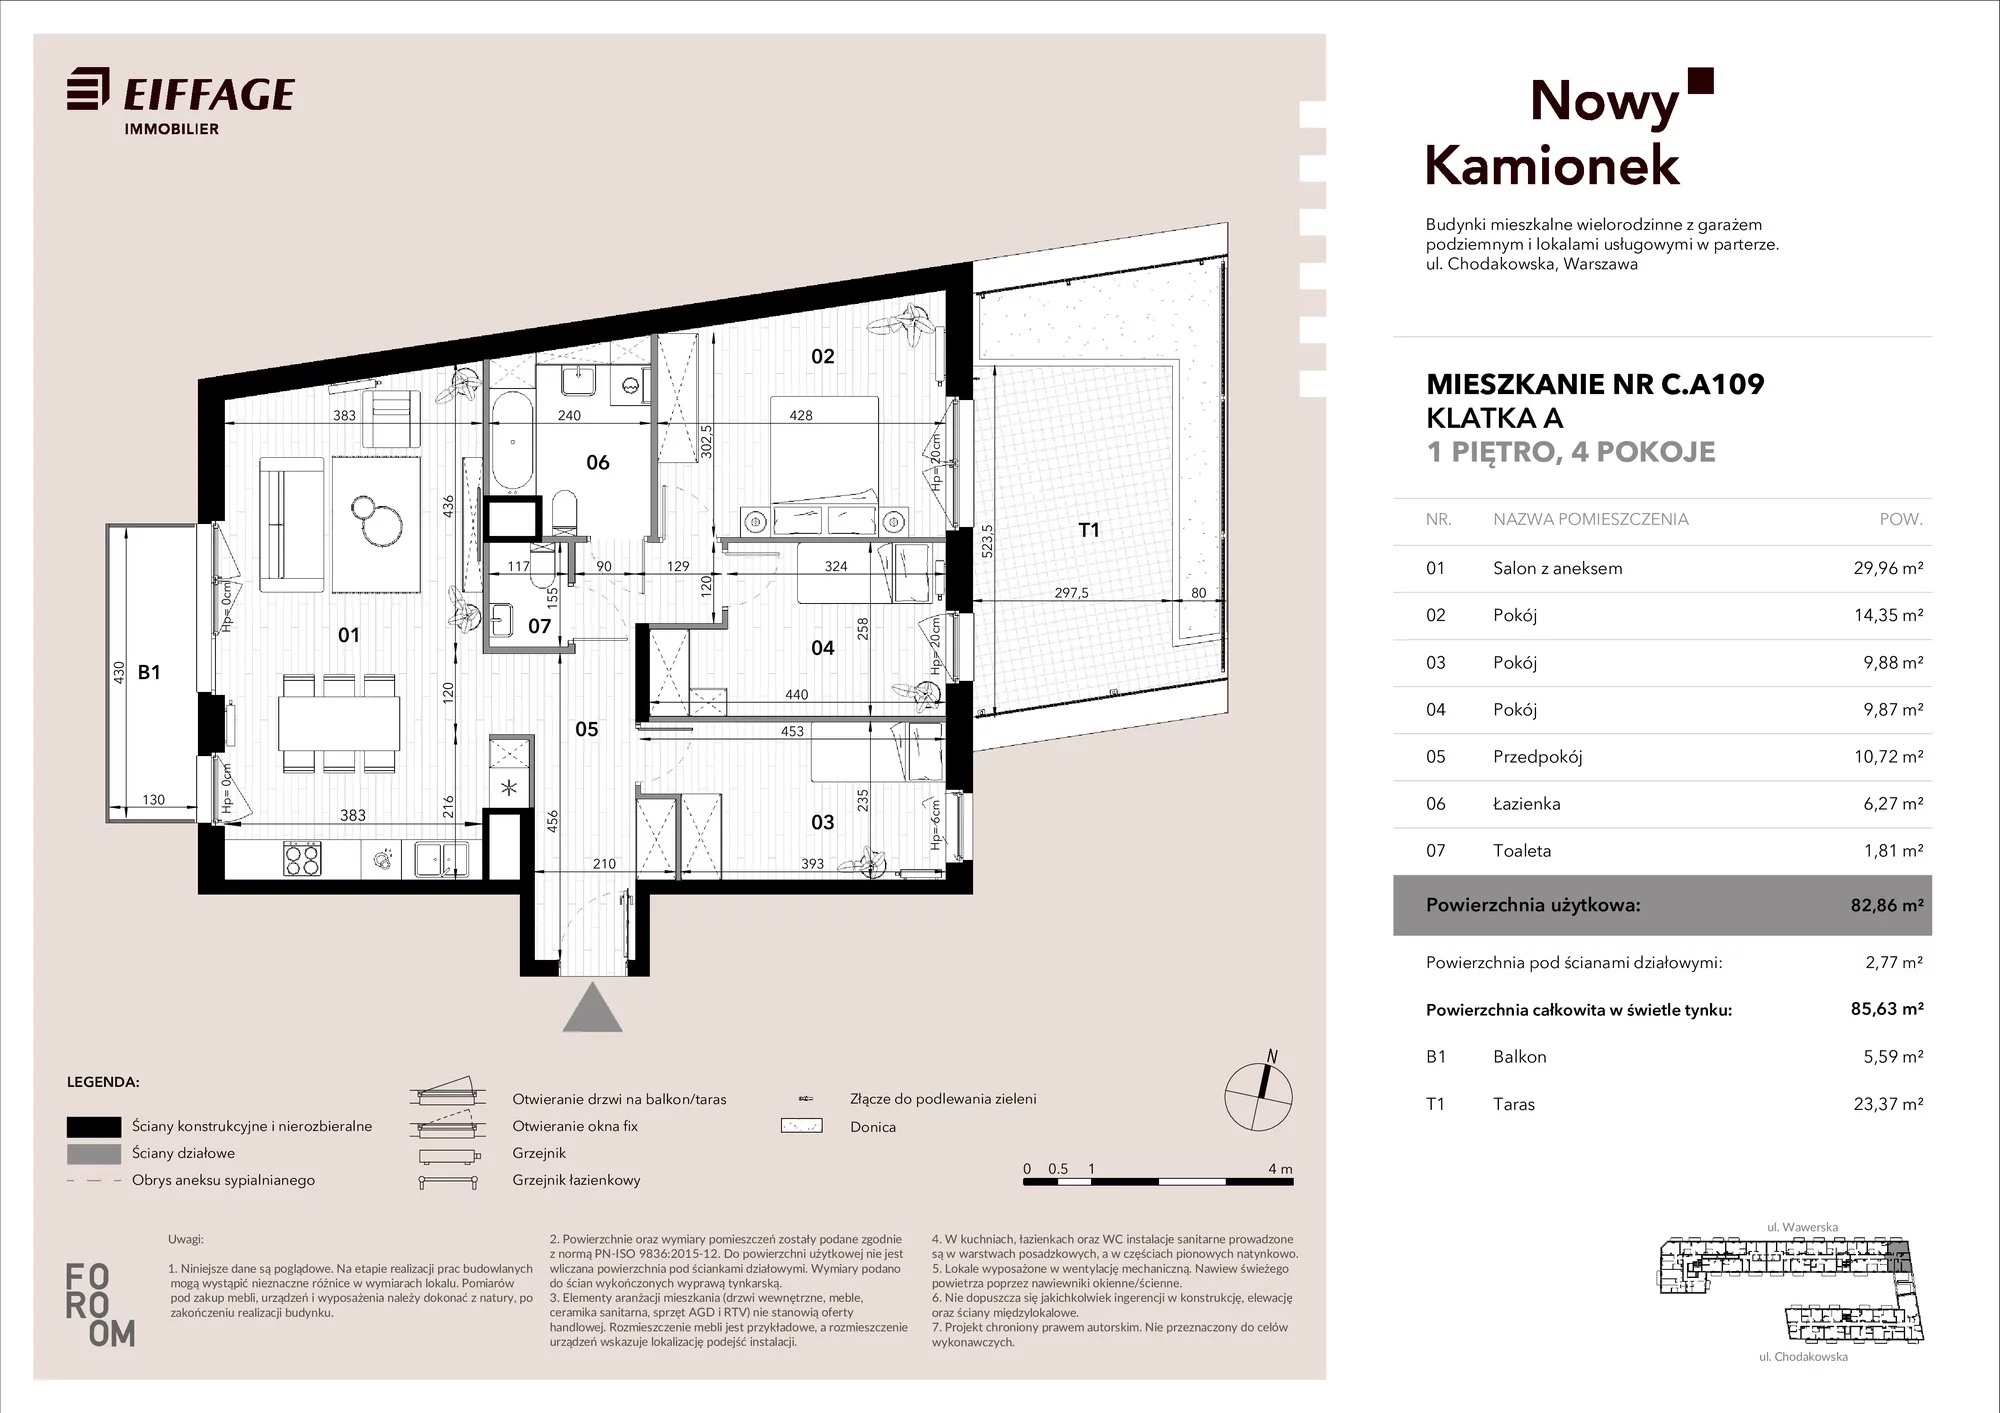 Mieszkanie 82,86 m², piętro 1, oferta nr C.A109, Nowy Kamionek, Warszawa, Praga Południe, Kamionek, ul. Chodakowska